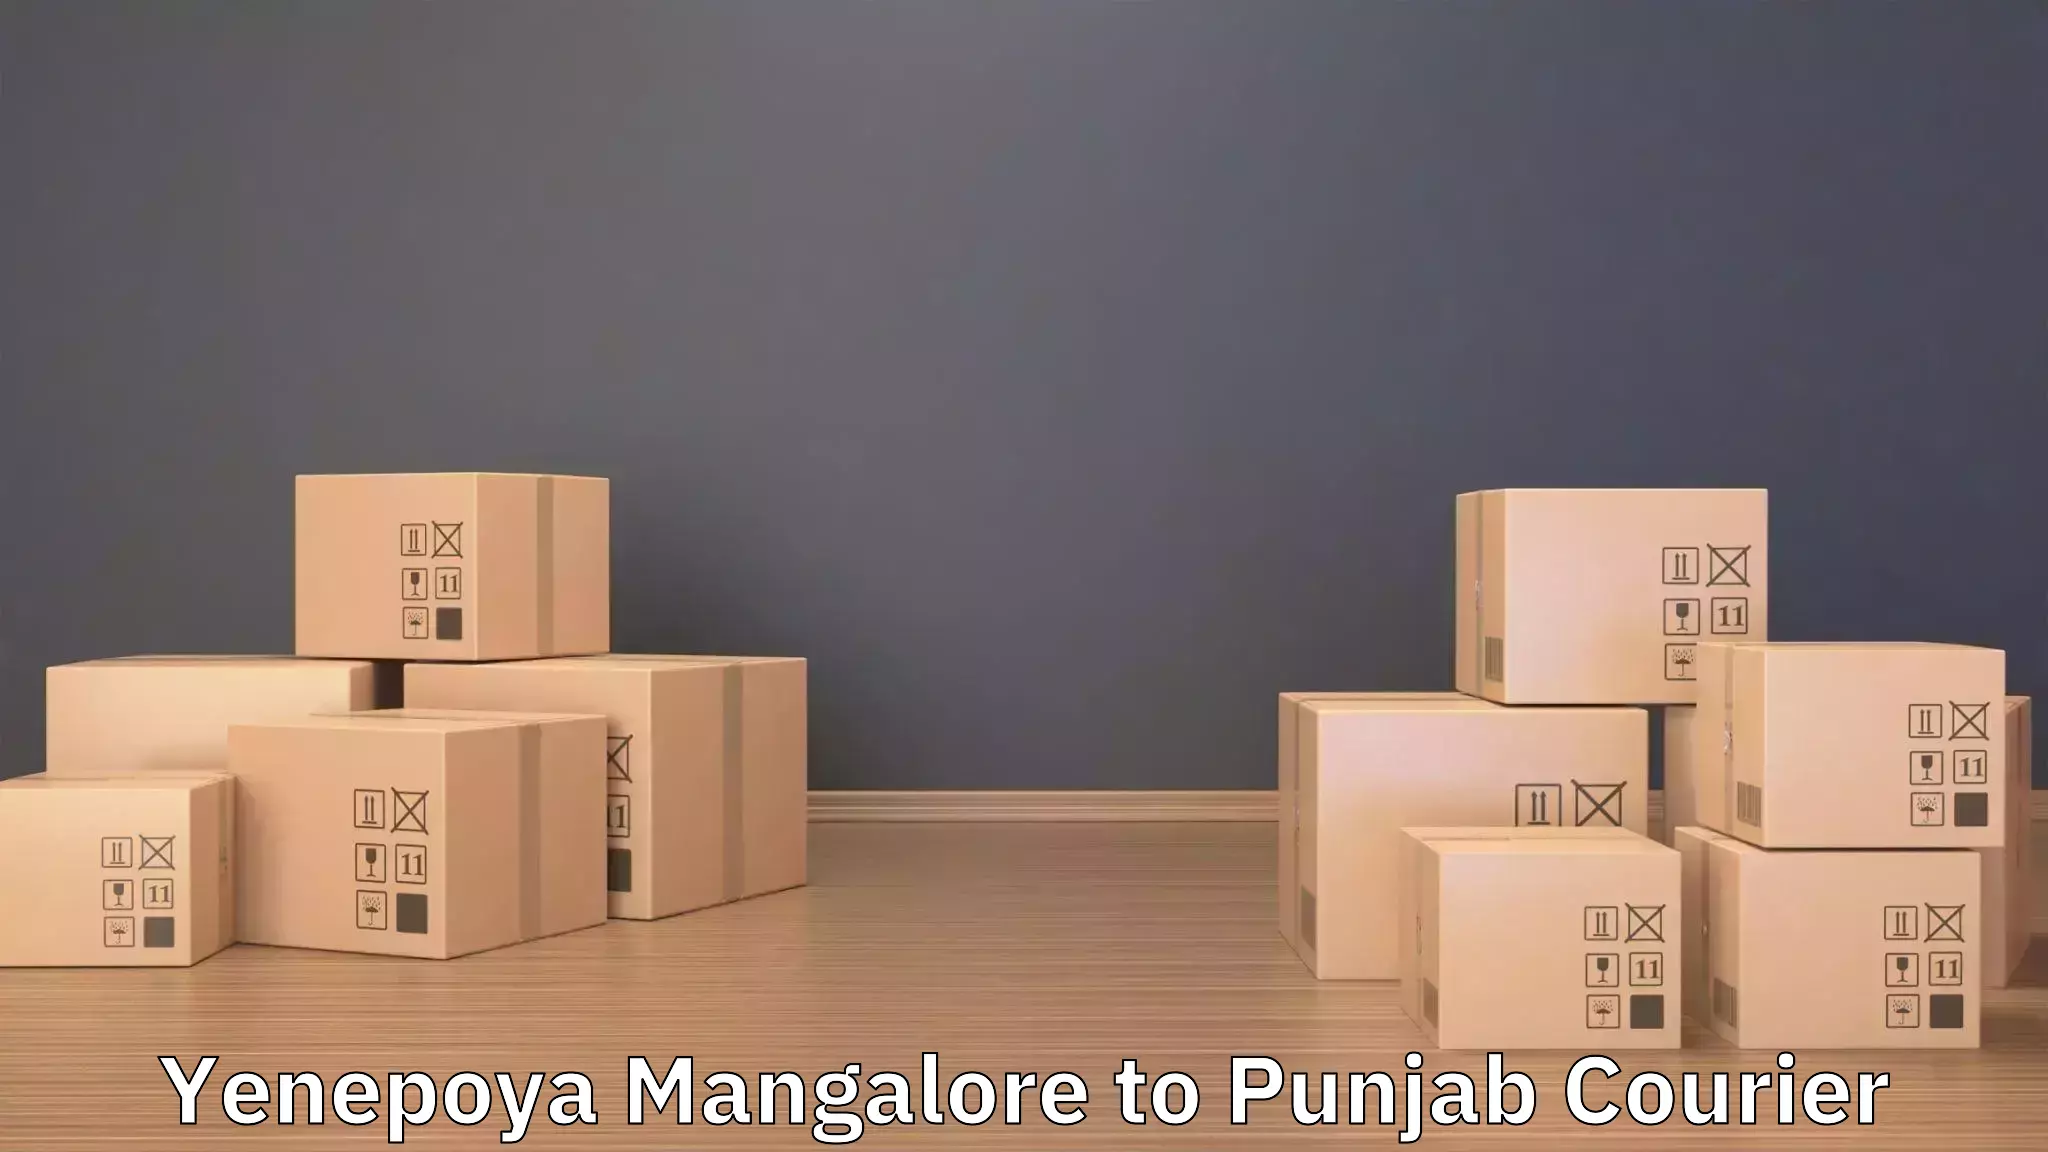 Furniture transport service Yenepoya Mangalore to Central University of Punjab Bathinda